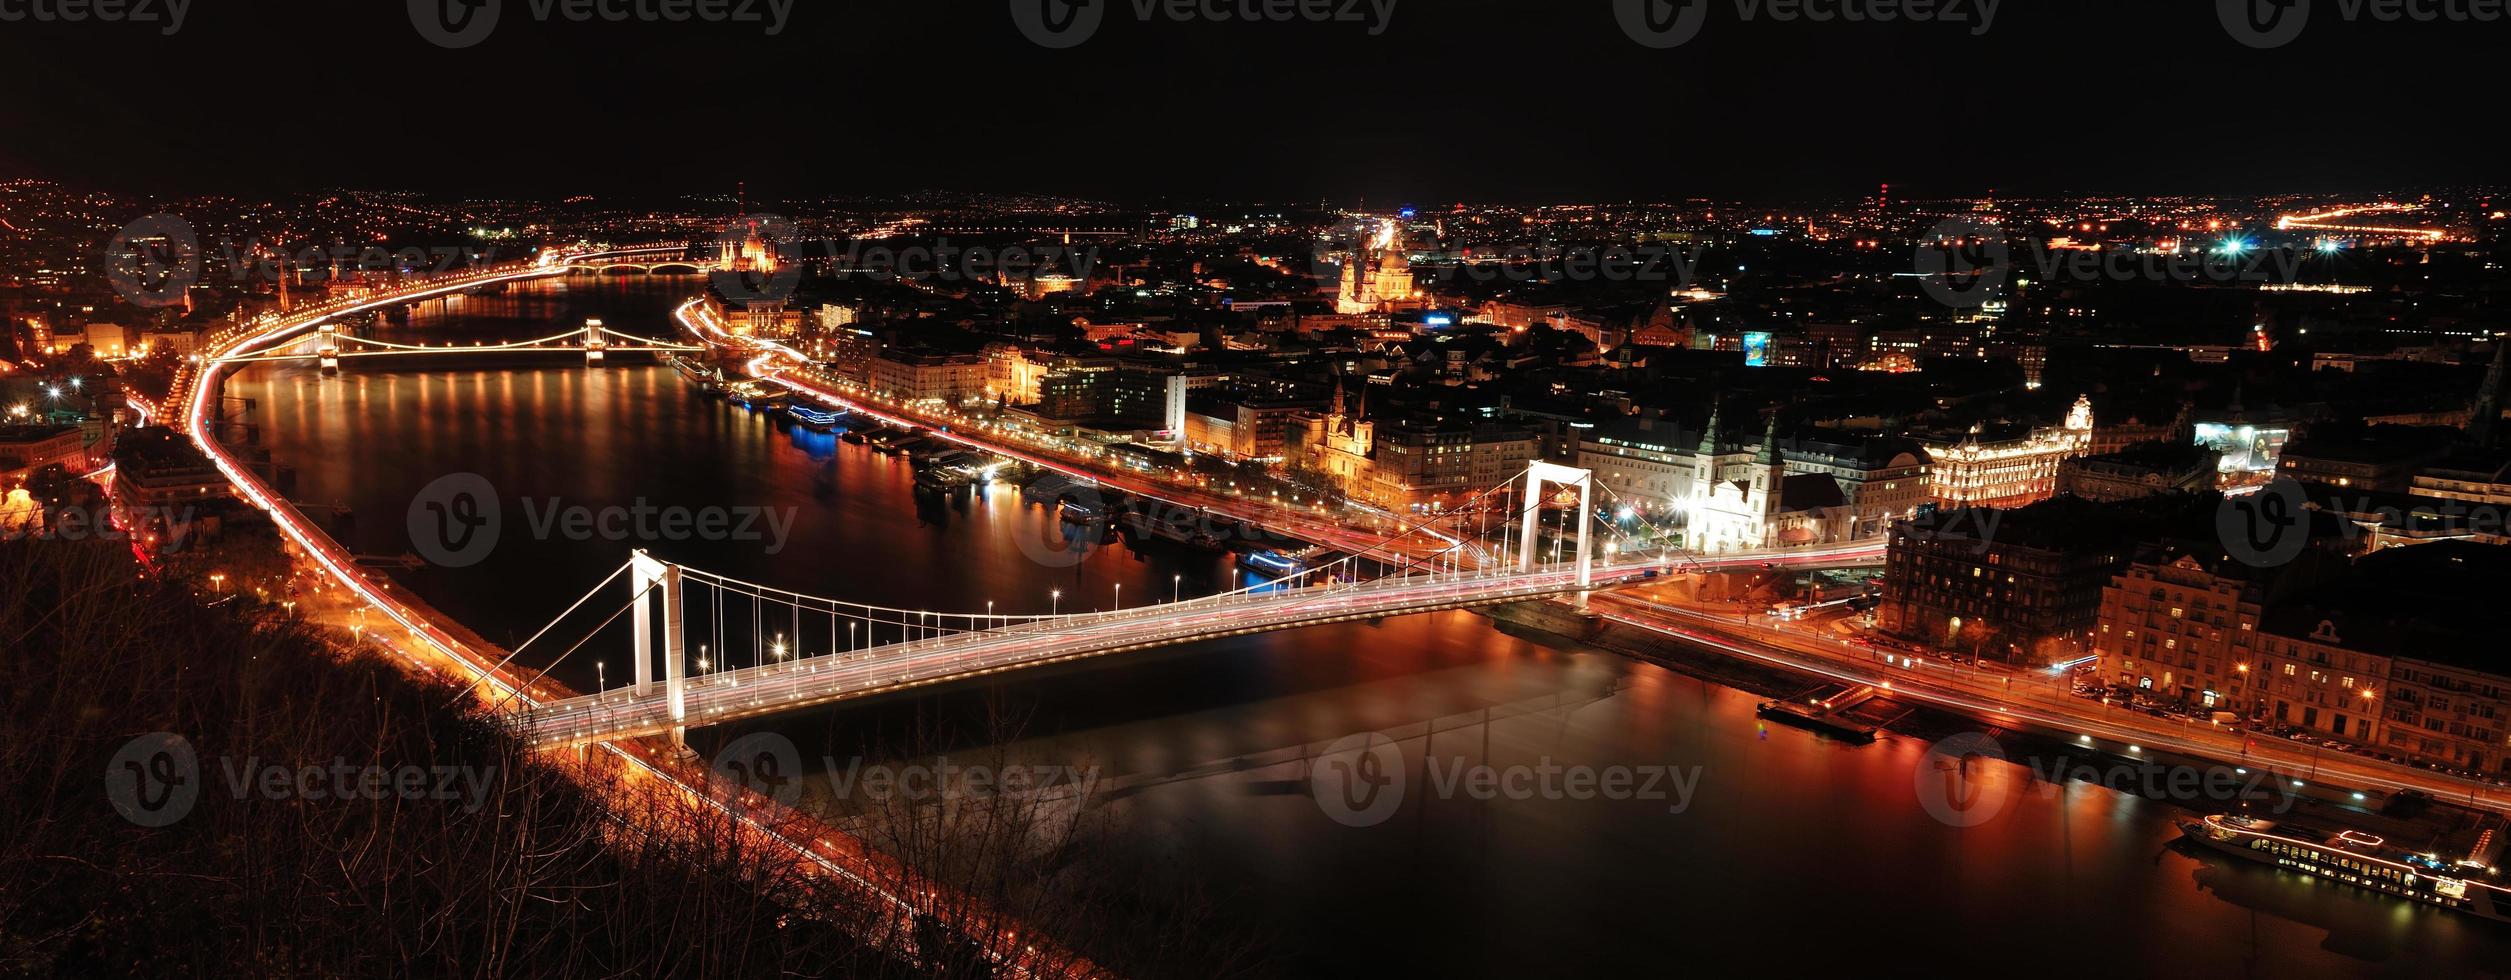 cidade de budapeste foto